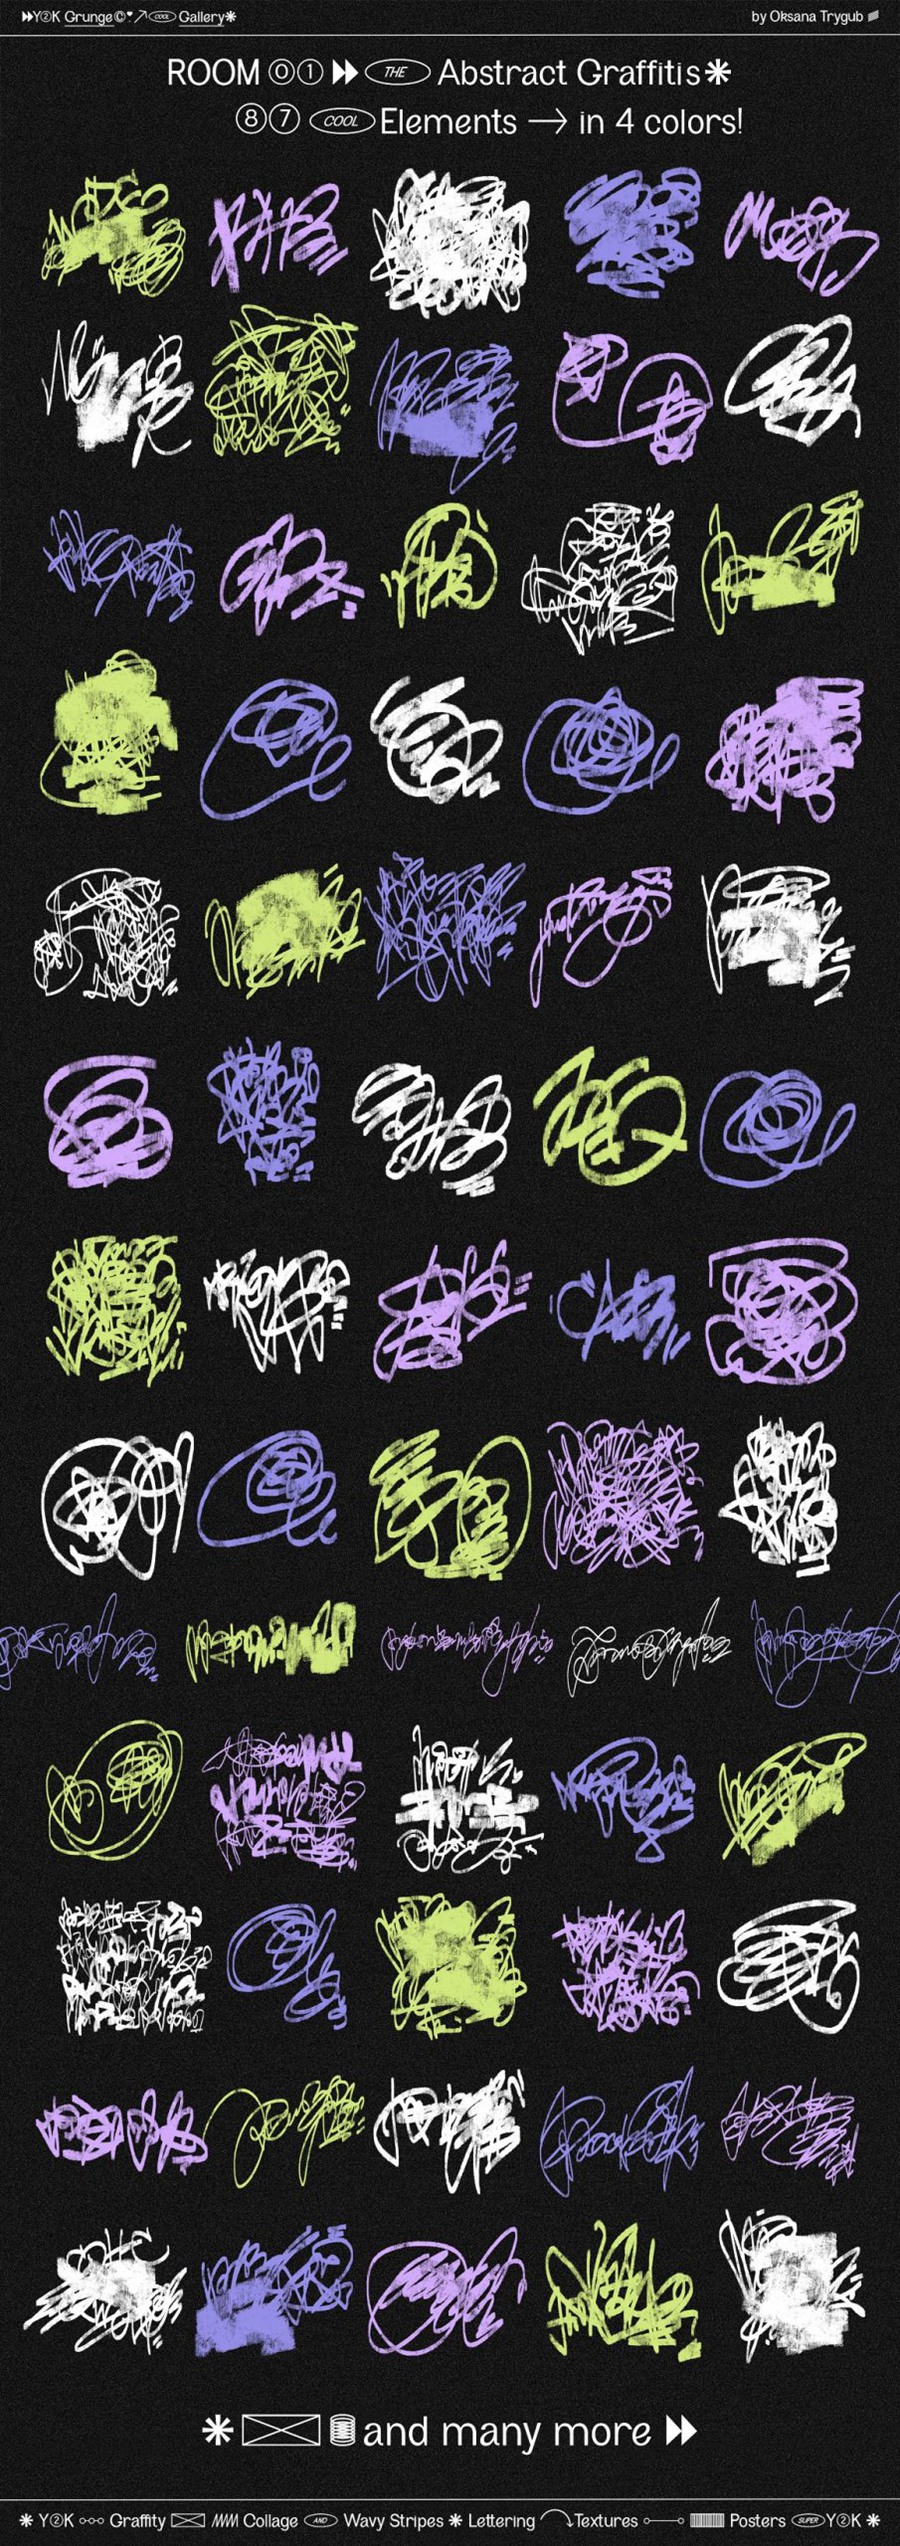 千禧年涂鸦垃圾美学Y2K涂鸦迷幻拼贴艺术波浪条纹背景形状素材包 Grunge Gallery: Graffiti Collage . 第15张